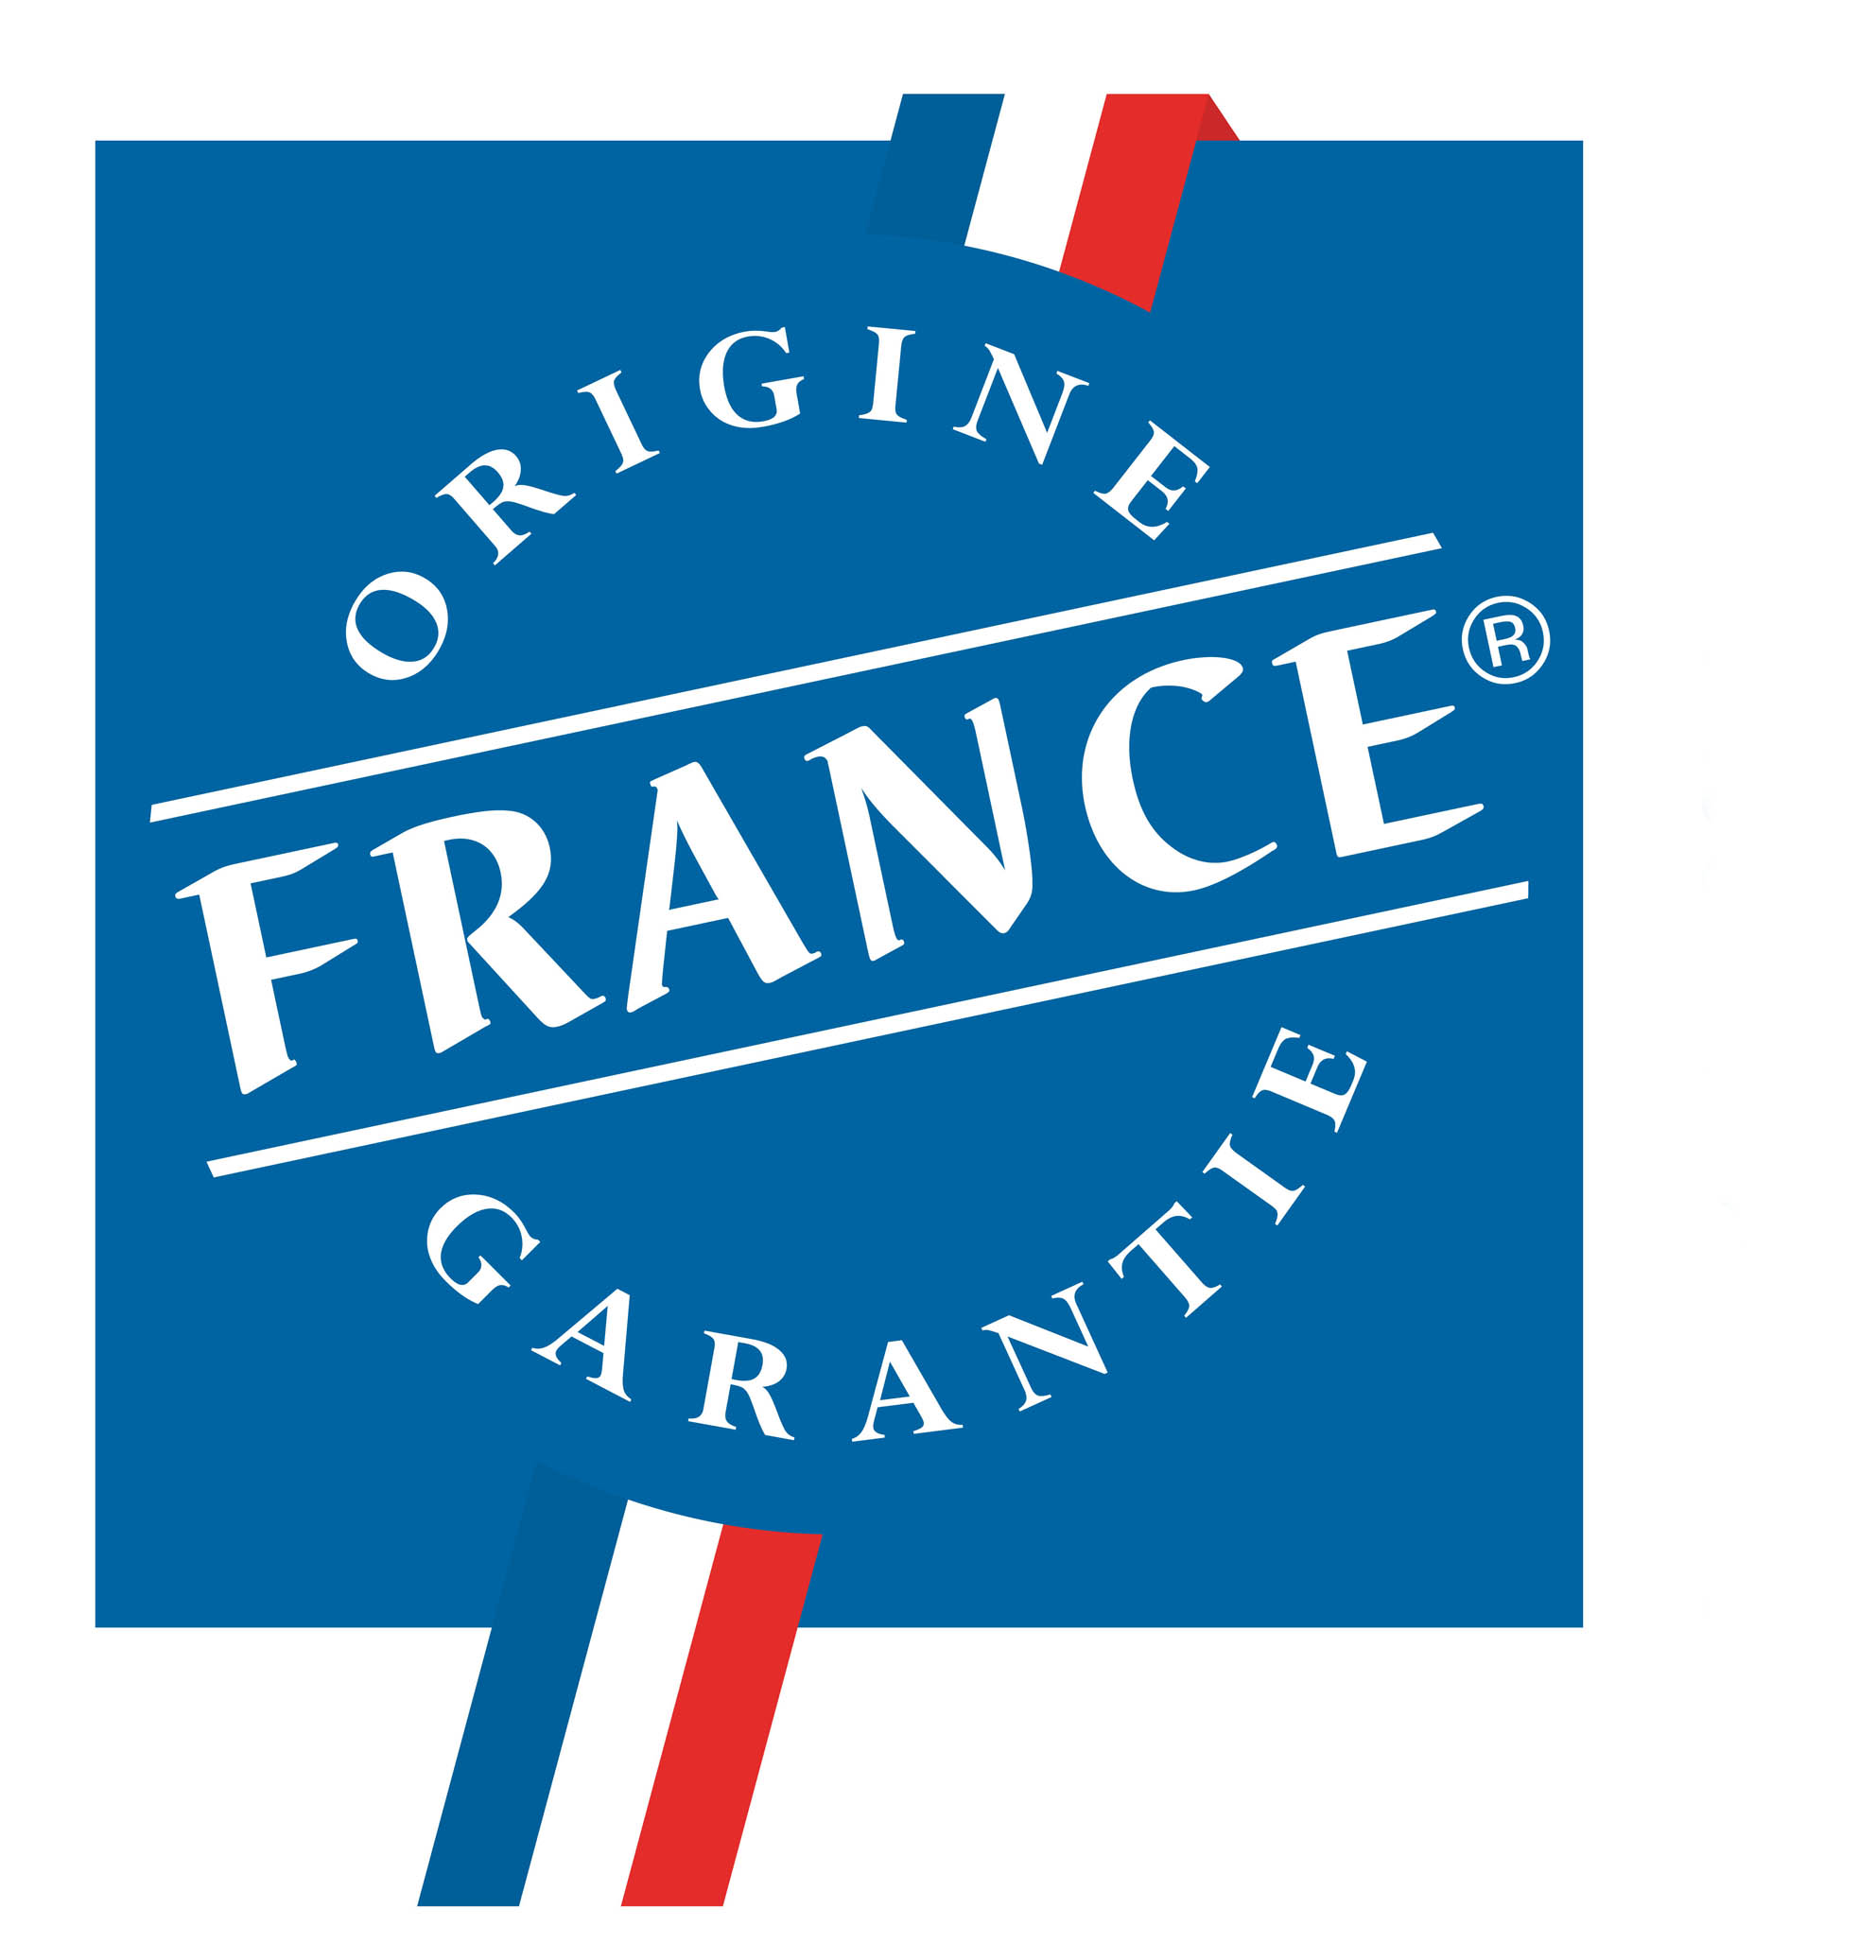  Un concours pour soutenir l’entreprenariat français